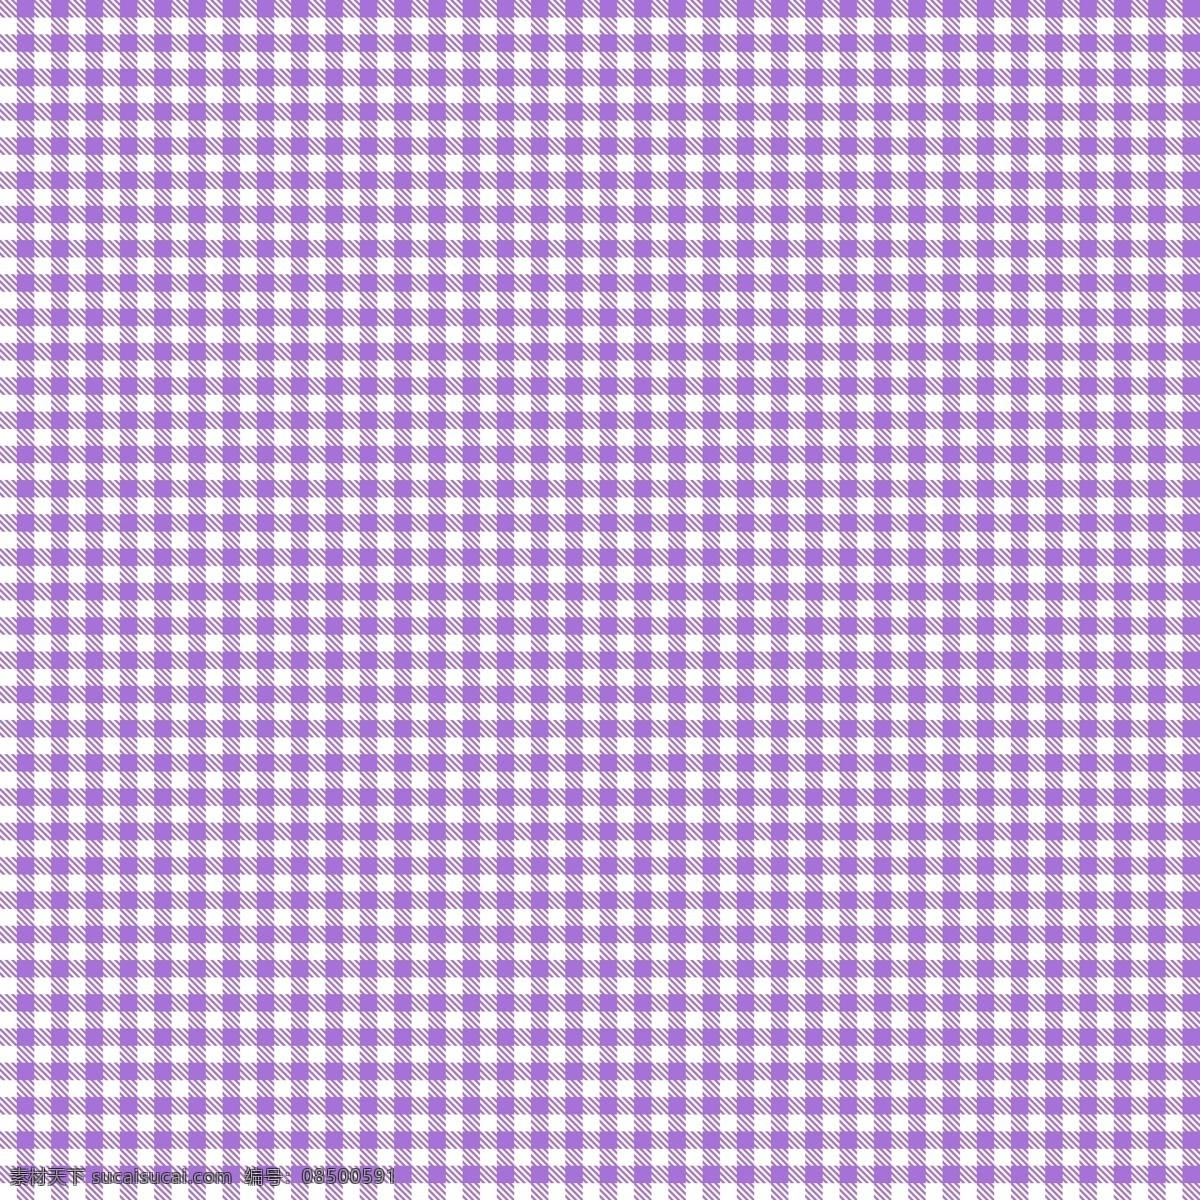 条子 紫色 紫色条子 快快 床单 生活百科 生活用品